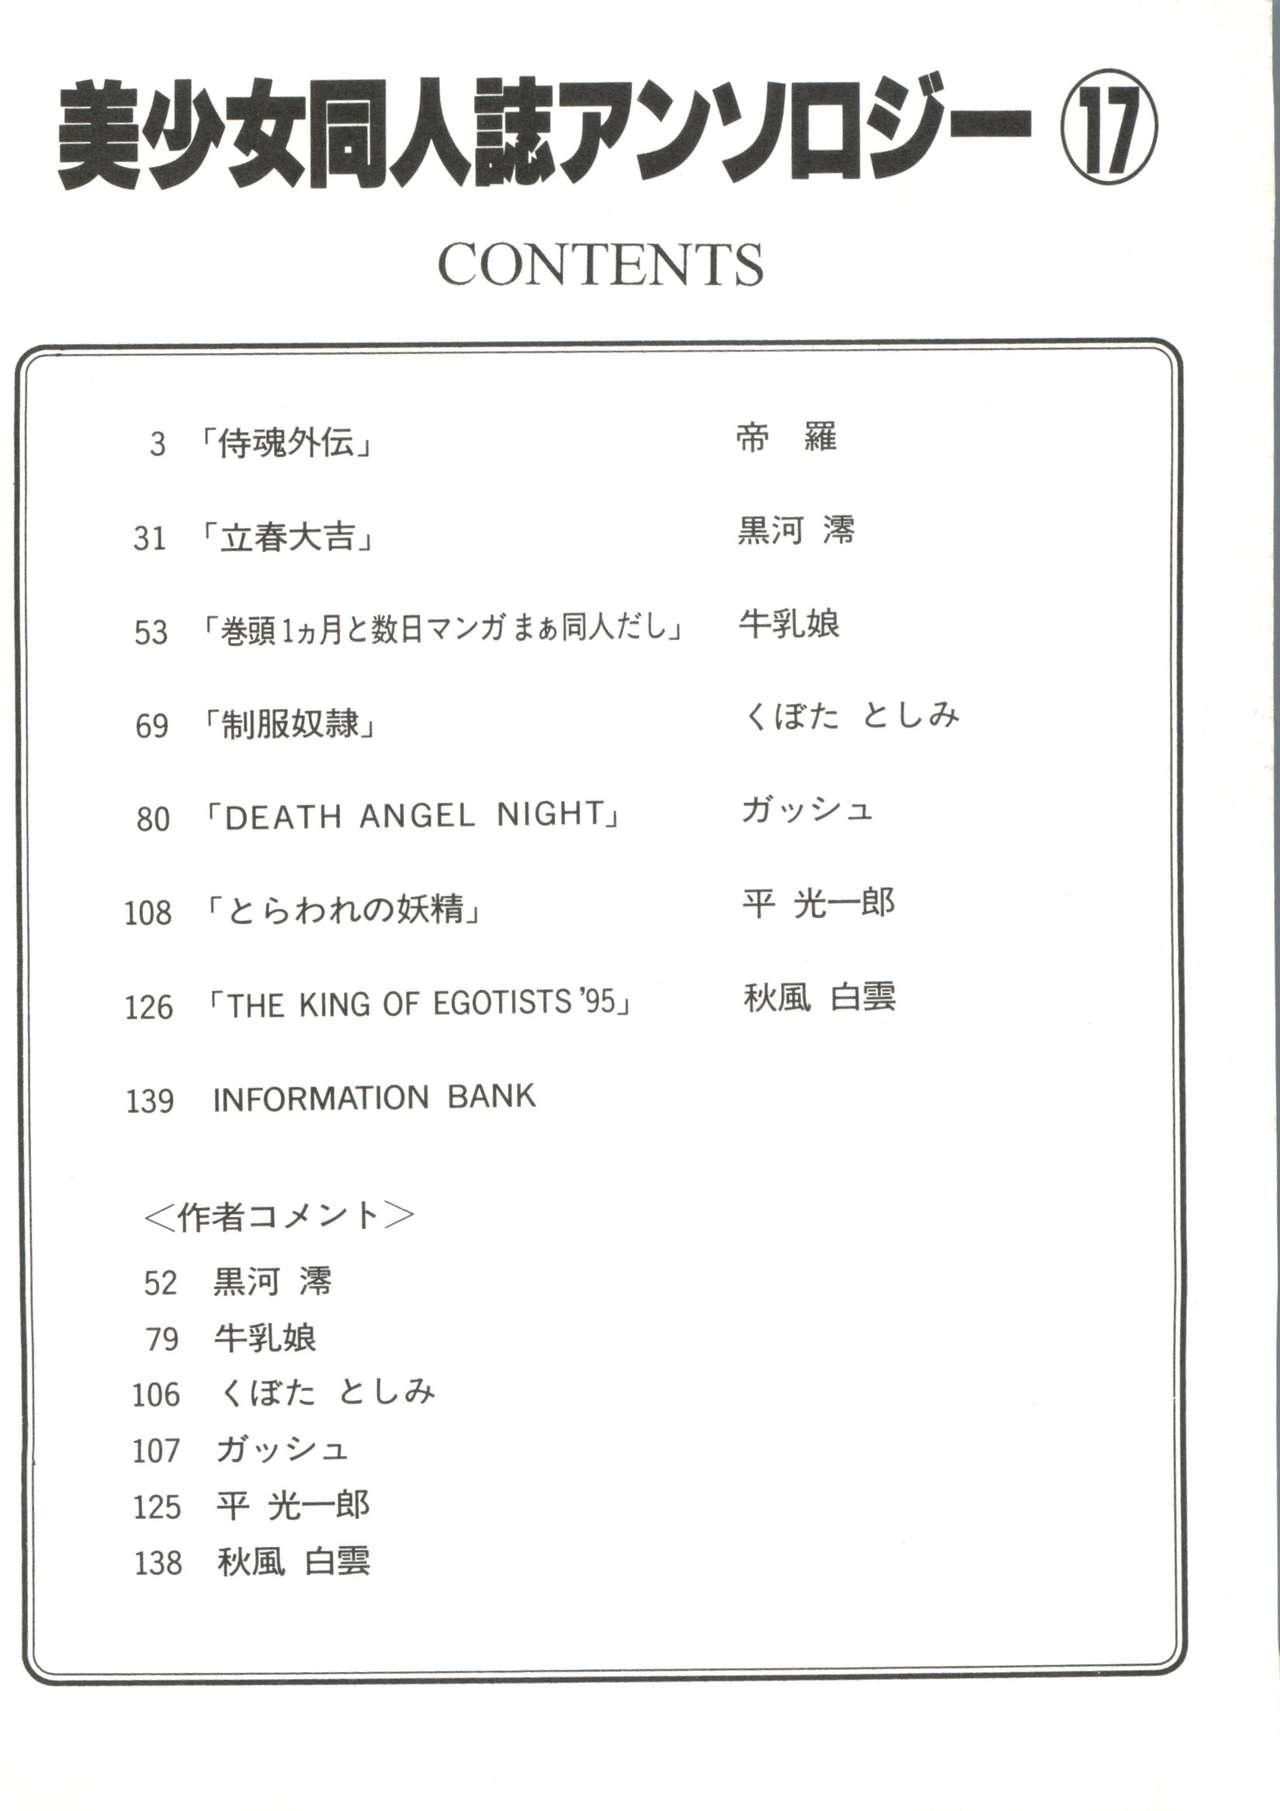 Bishoujo Doujinshi Anthology 17 5